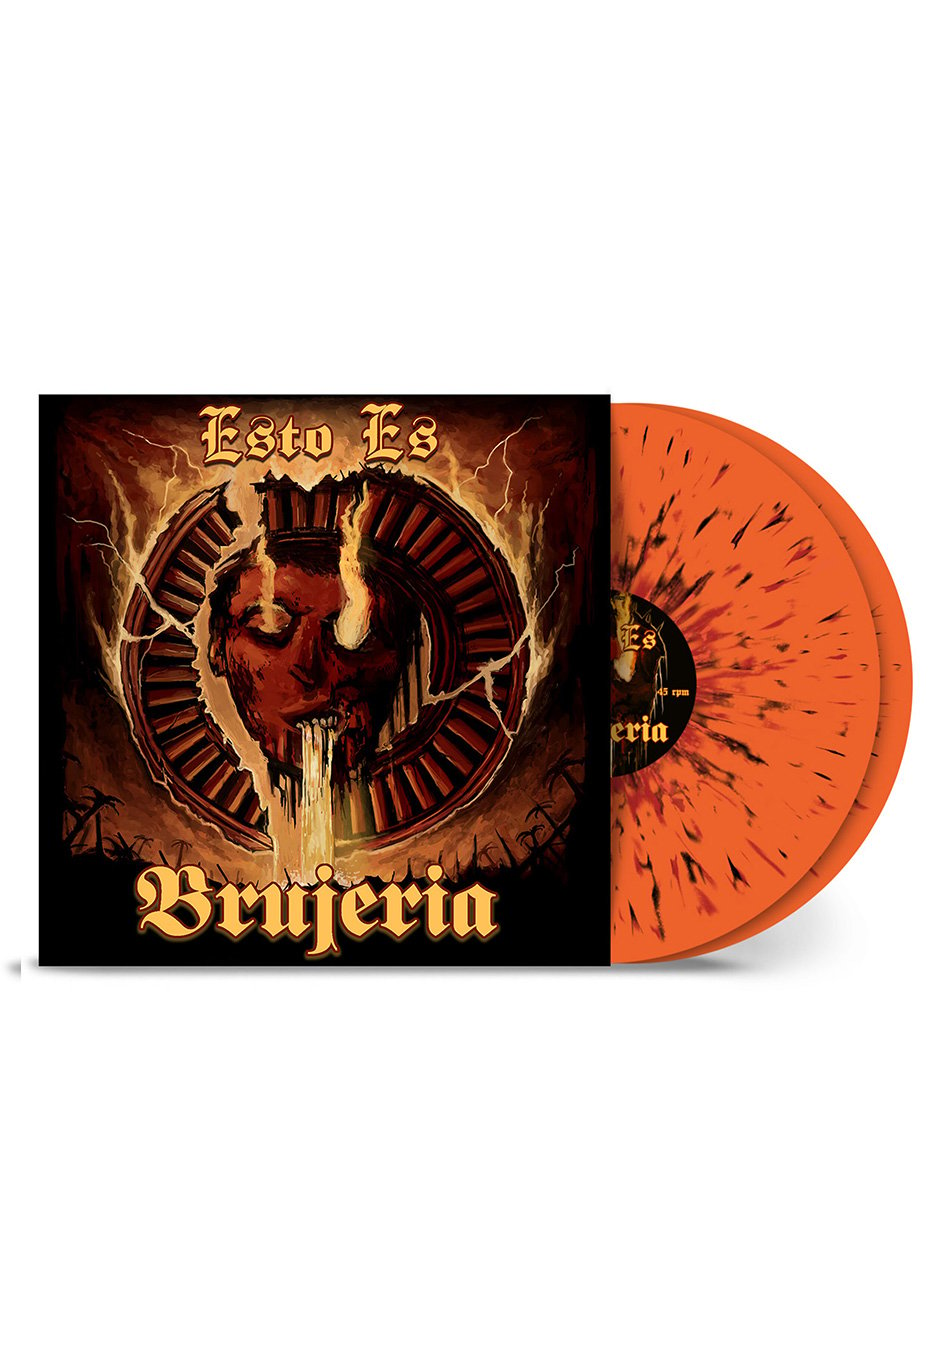 Brujeria - Esto Es Brujeria Ltd. Orange/Red/Black - Splattered 2 Vinyl